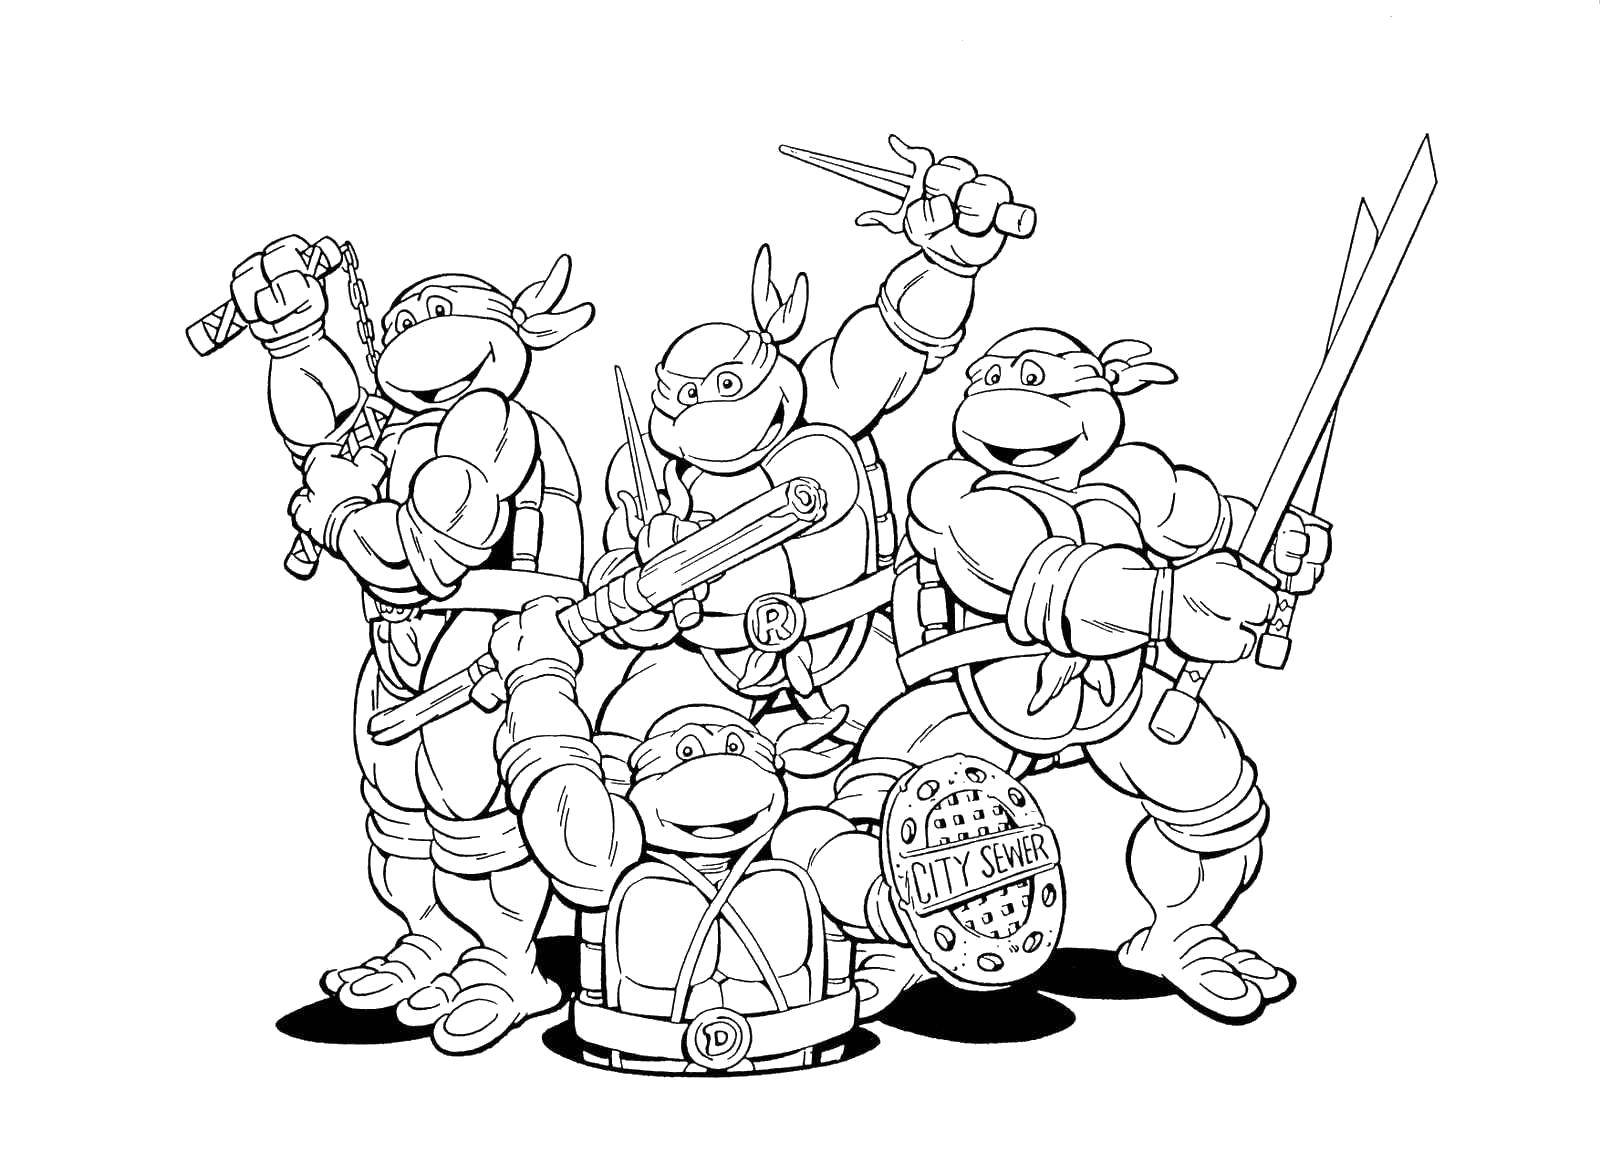 Coloring Teenage mutant ninja turtles friendly team. Category ninja . Tags:  Comics, Teenage Mutant Ninja Turtles.